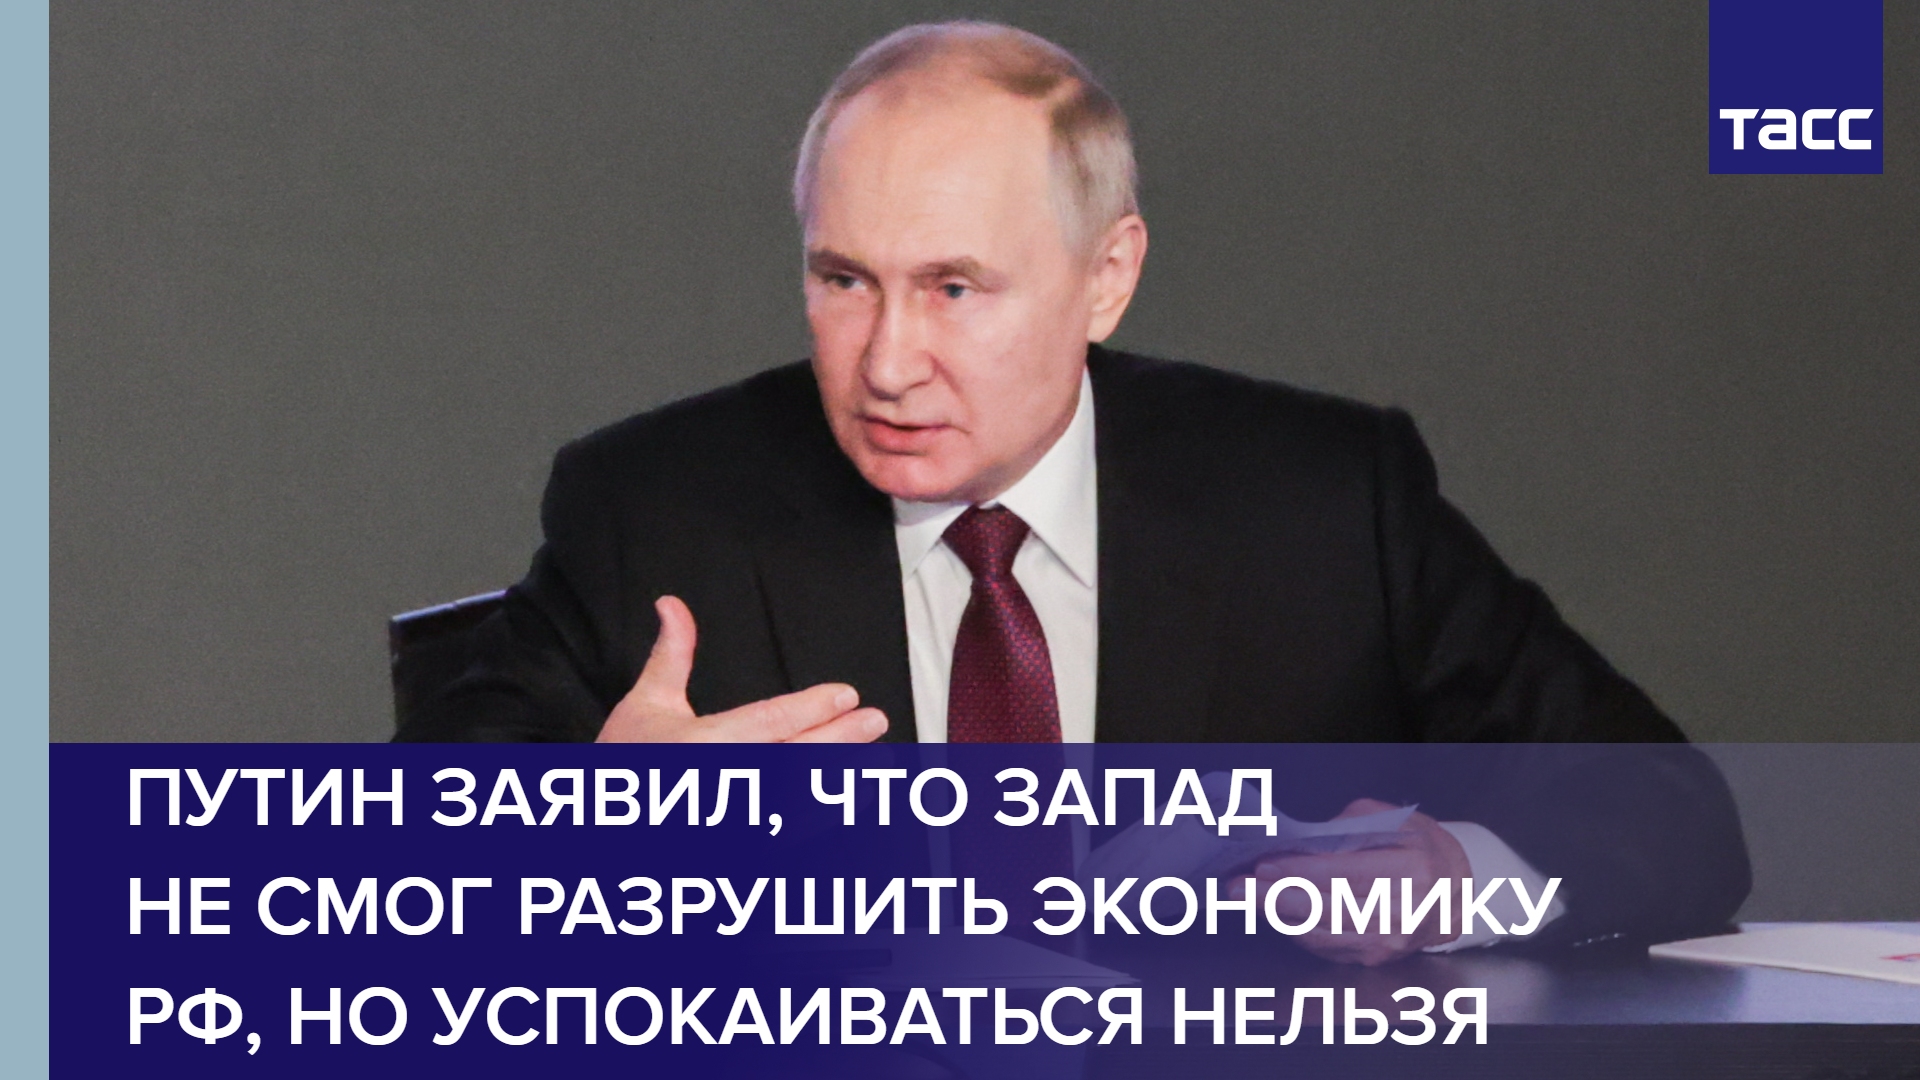 Путин заявил, что Запад не смог разрушить экономику РФ, но успокаиваться нельзя